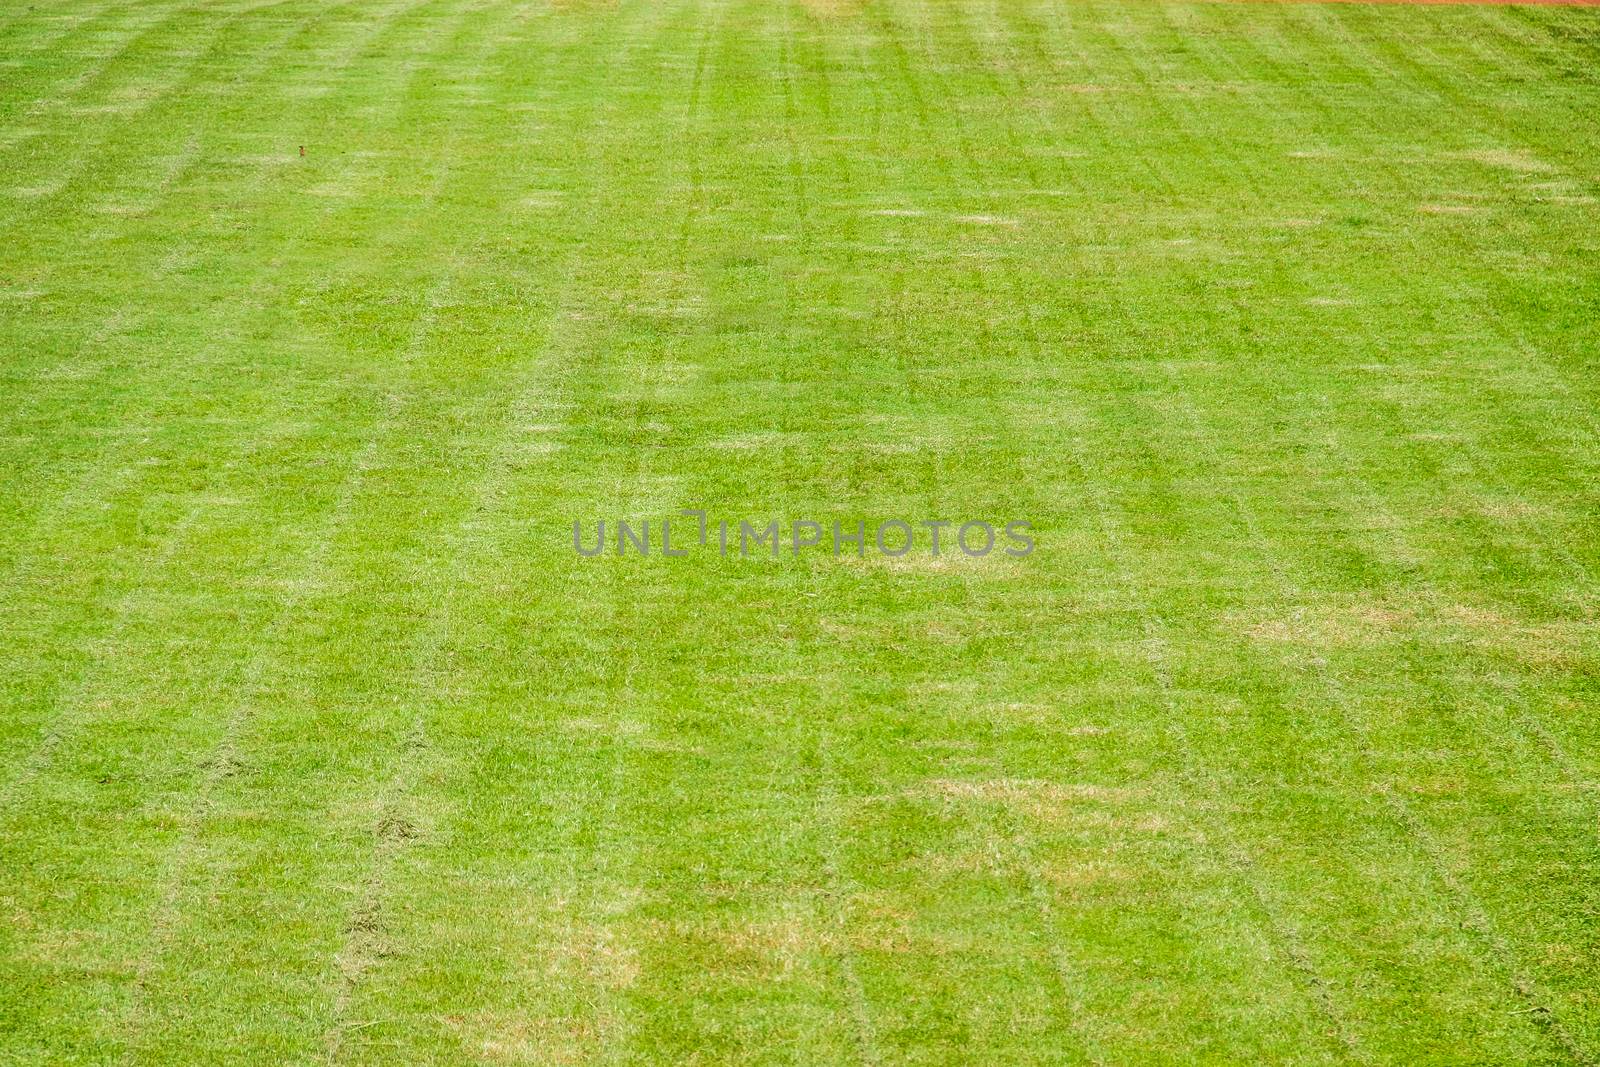 new cutting grass of green soccer field